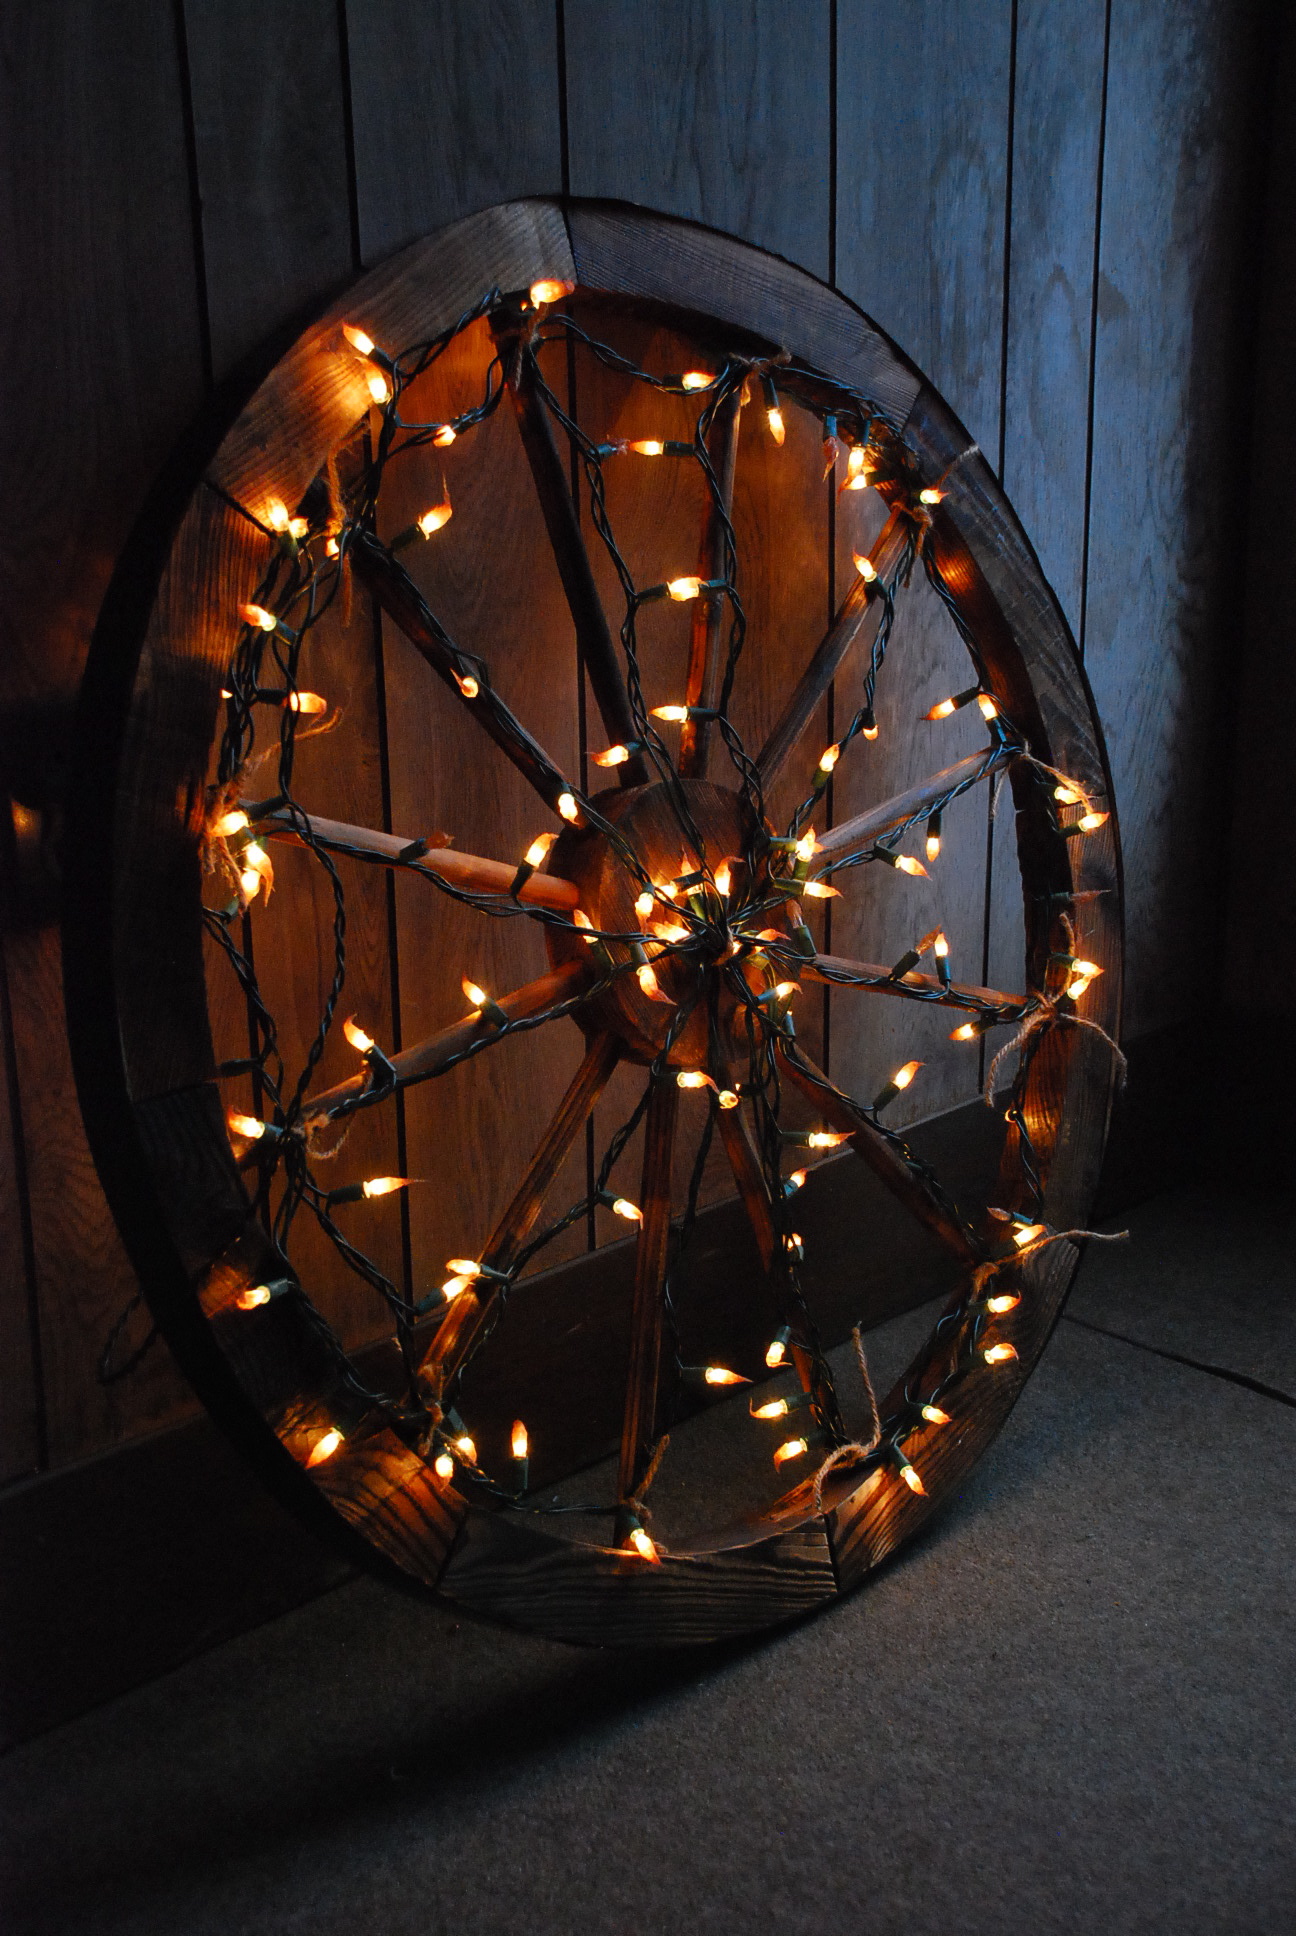 Wagon Wheel with Christmas Lights